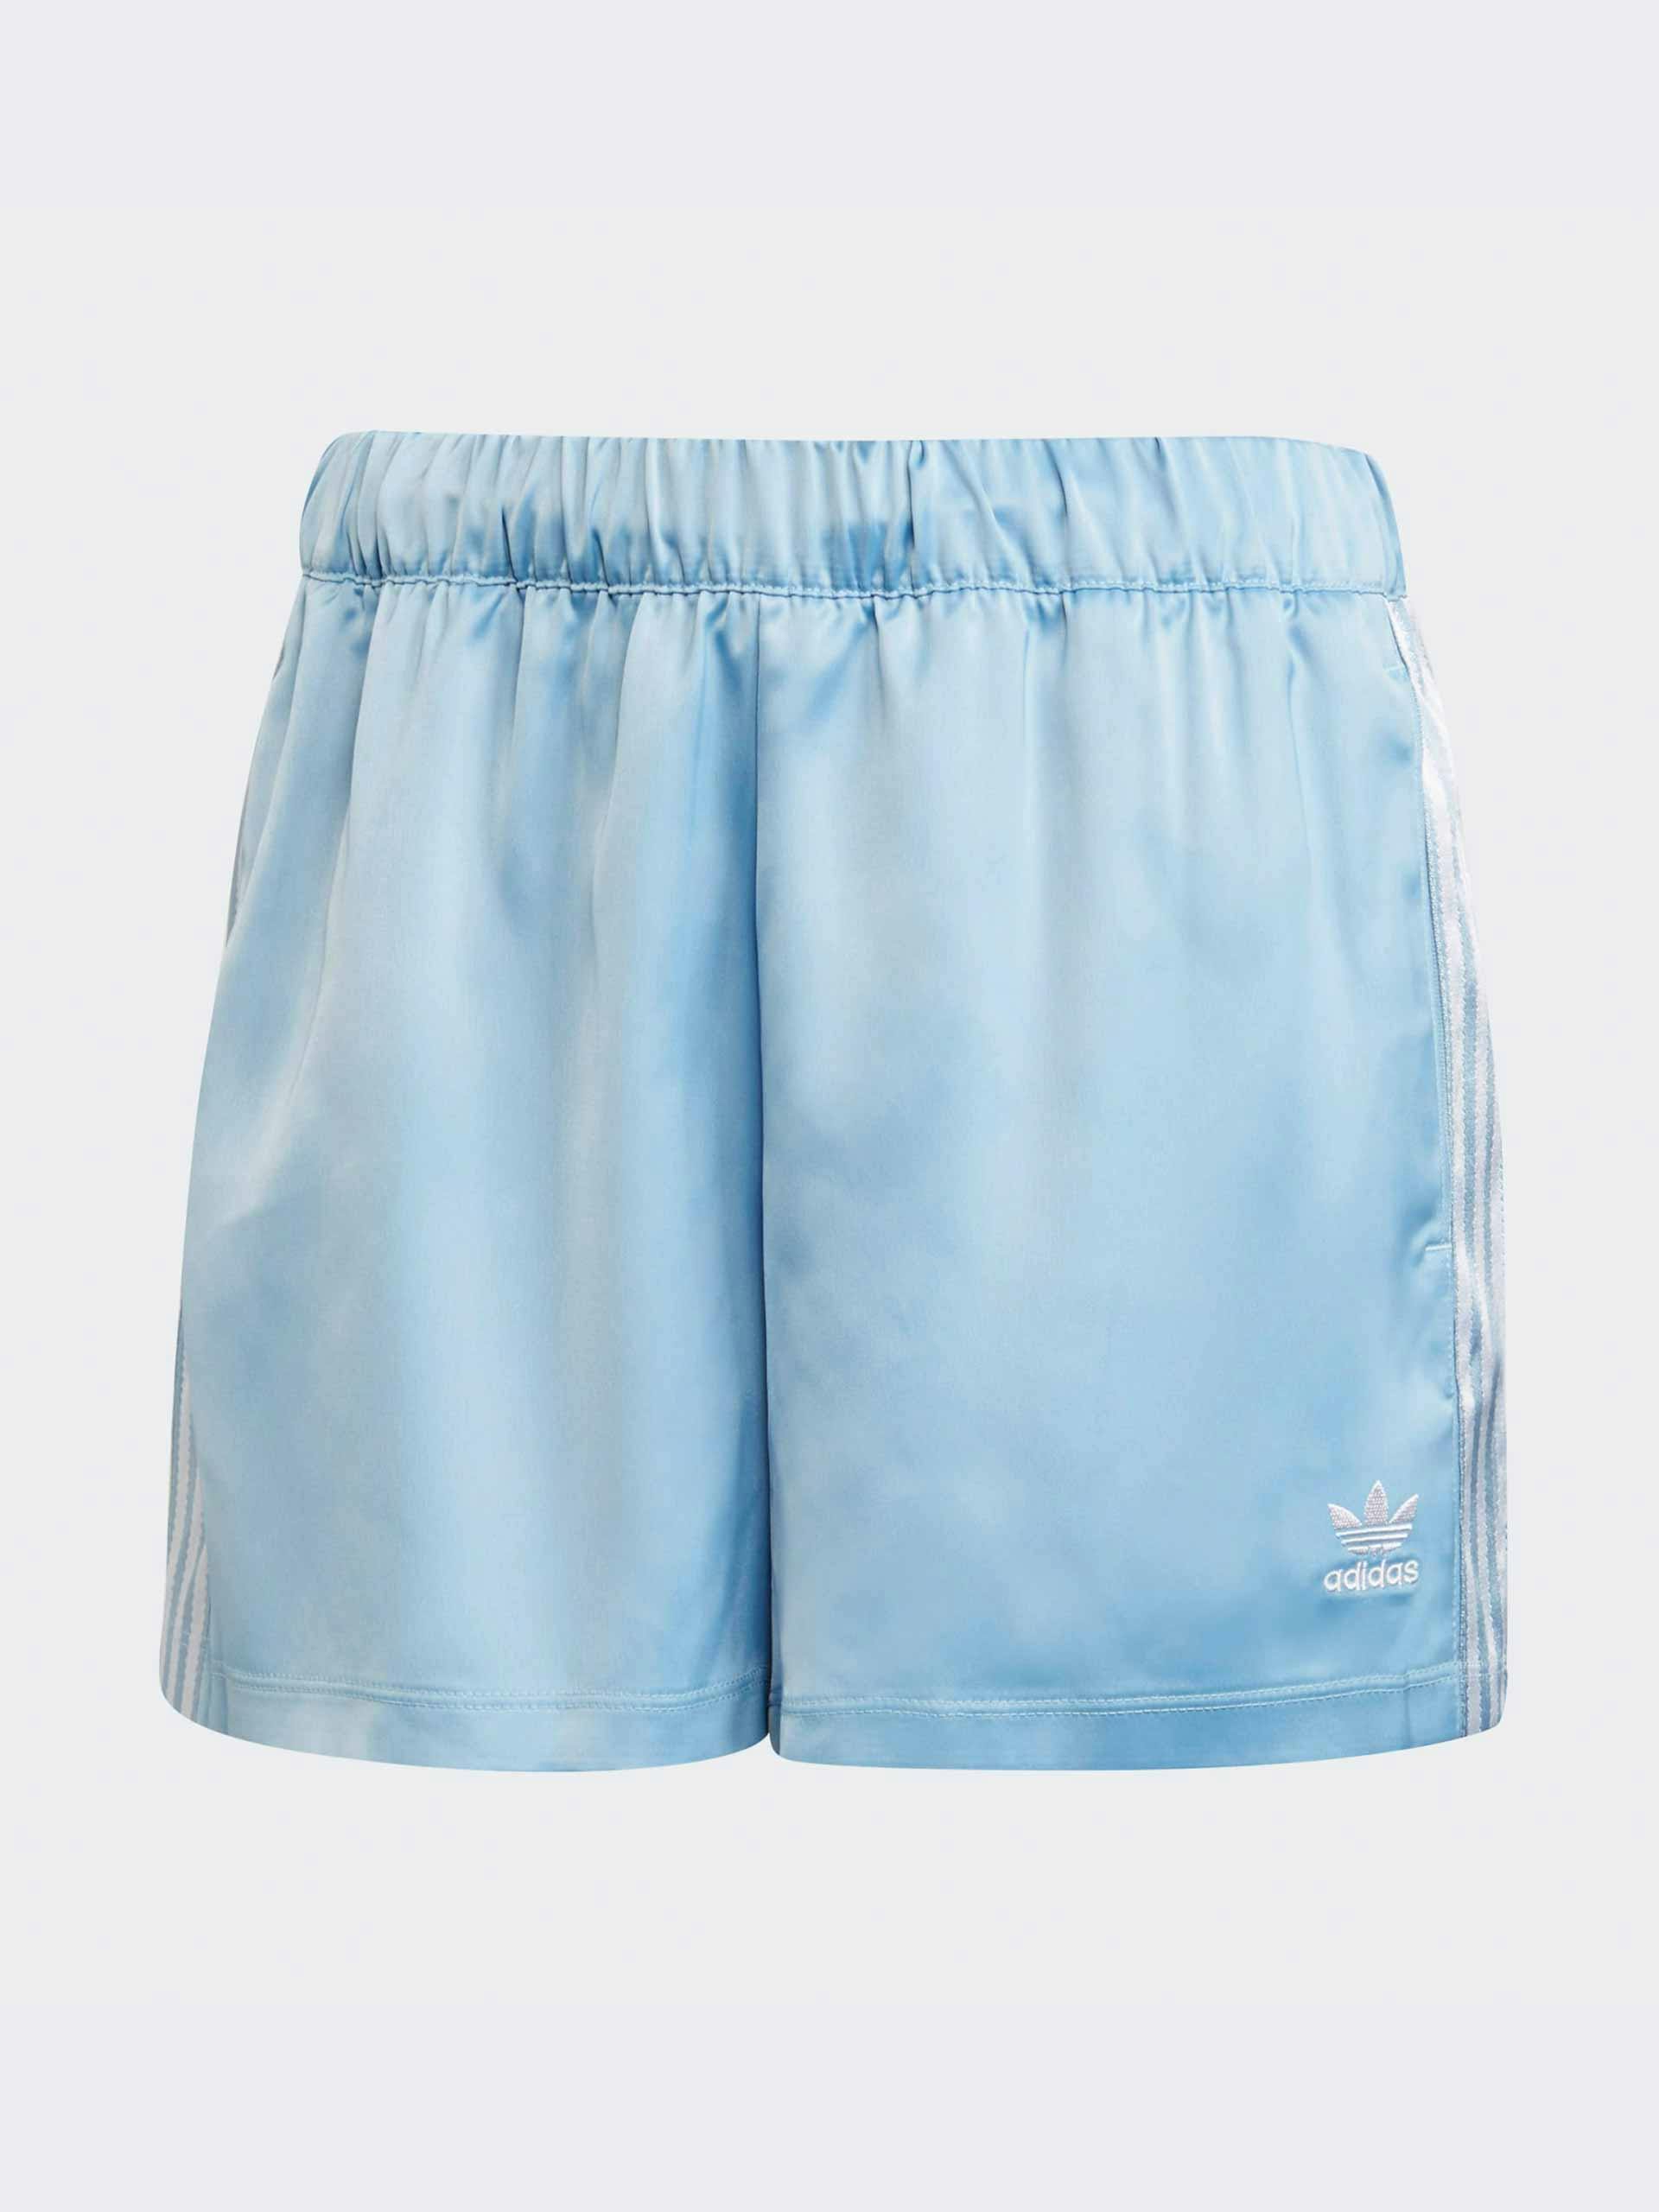 Blue satin shorts